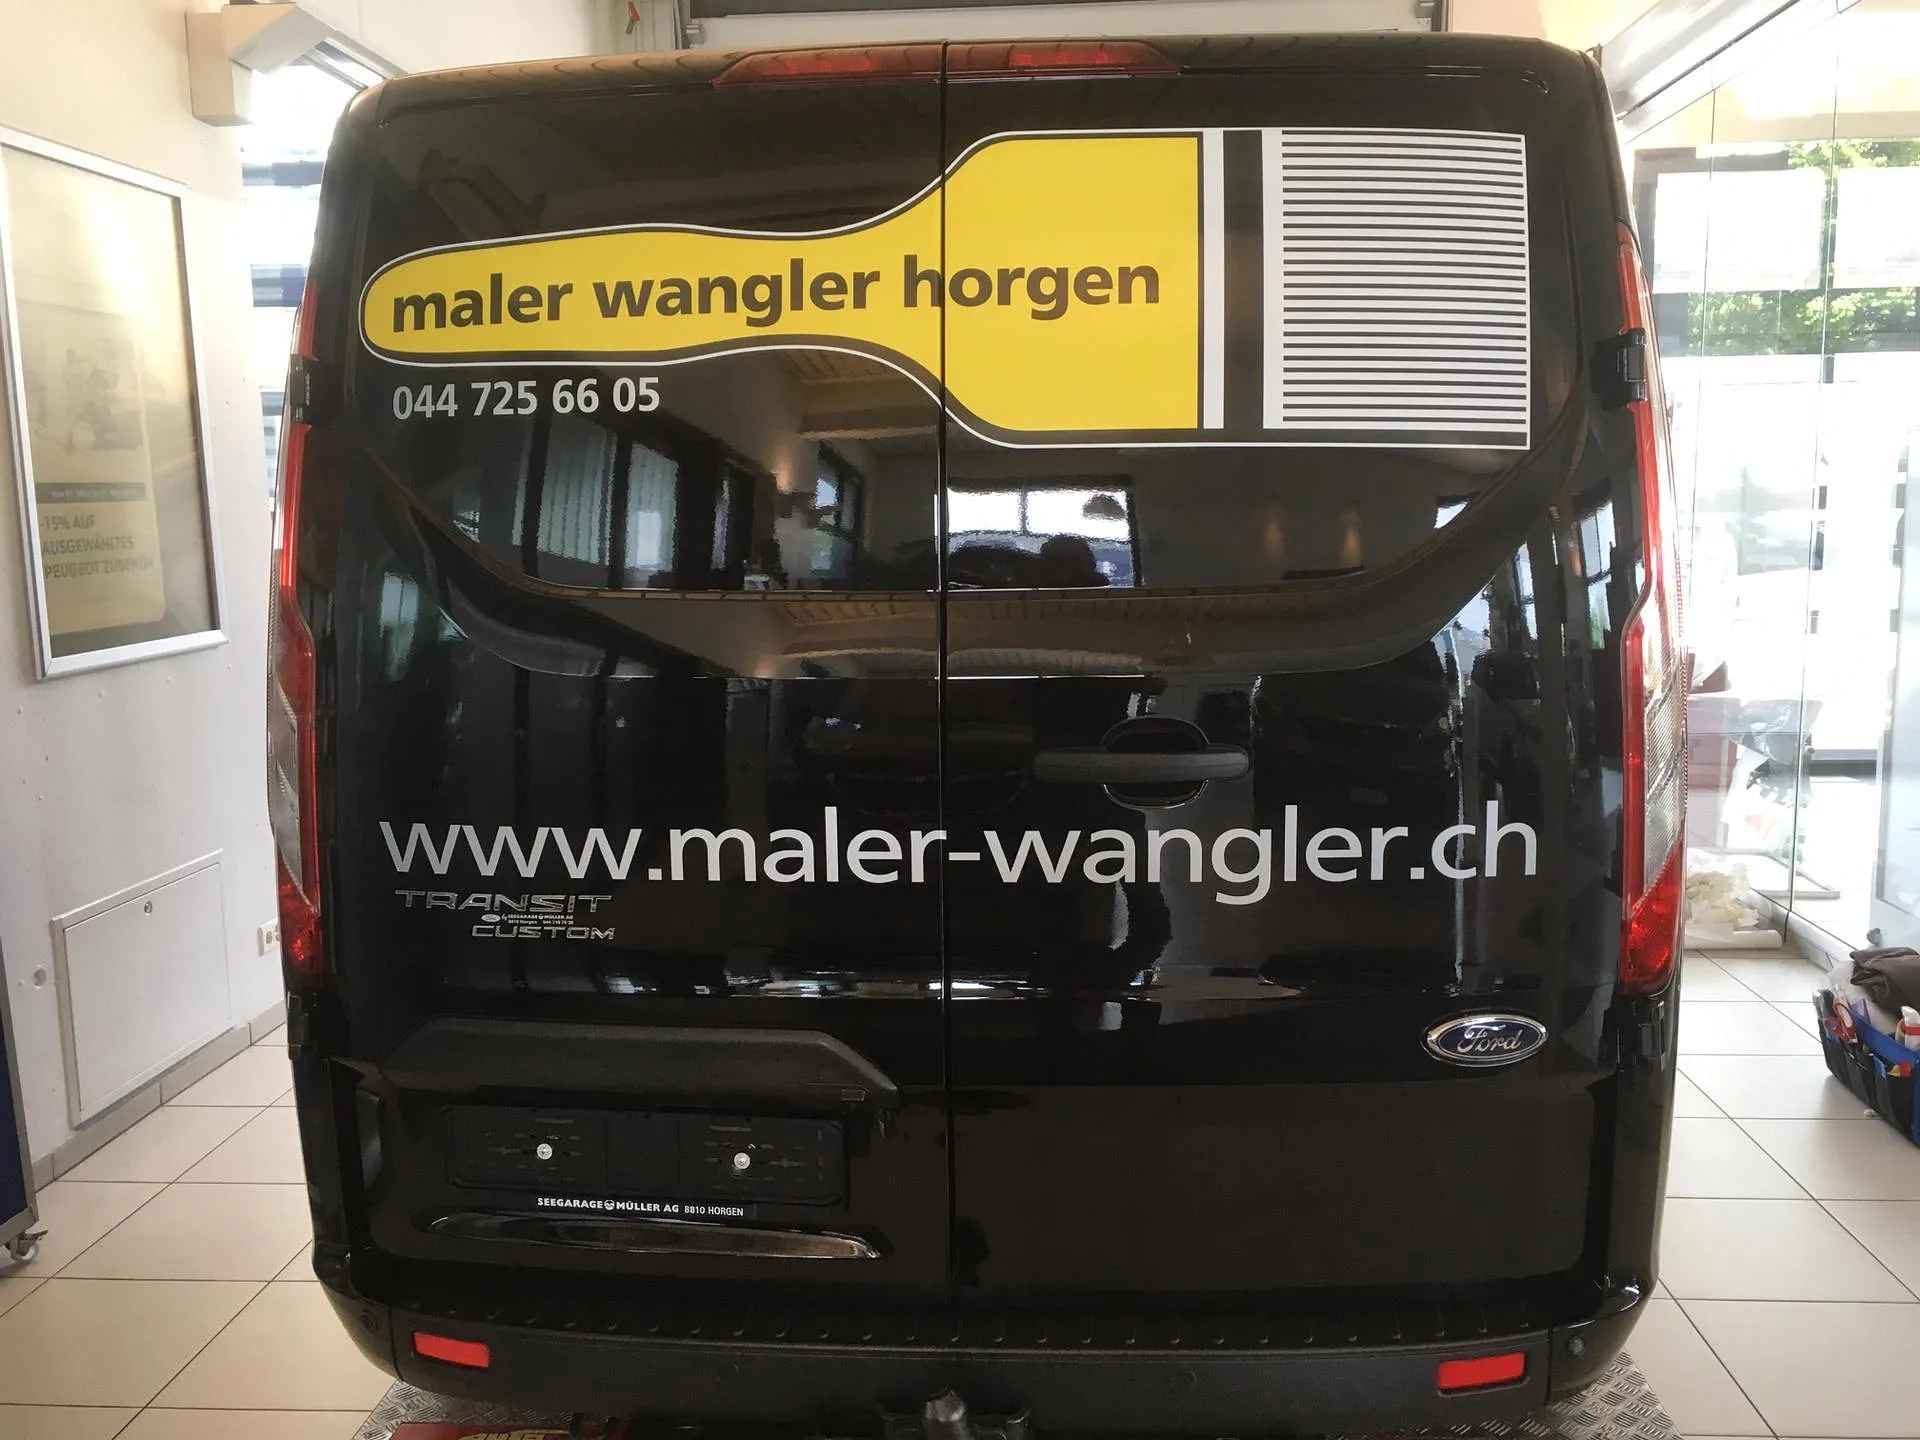 Maler Wangler Horgen GmbH